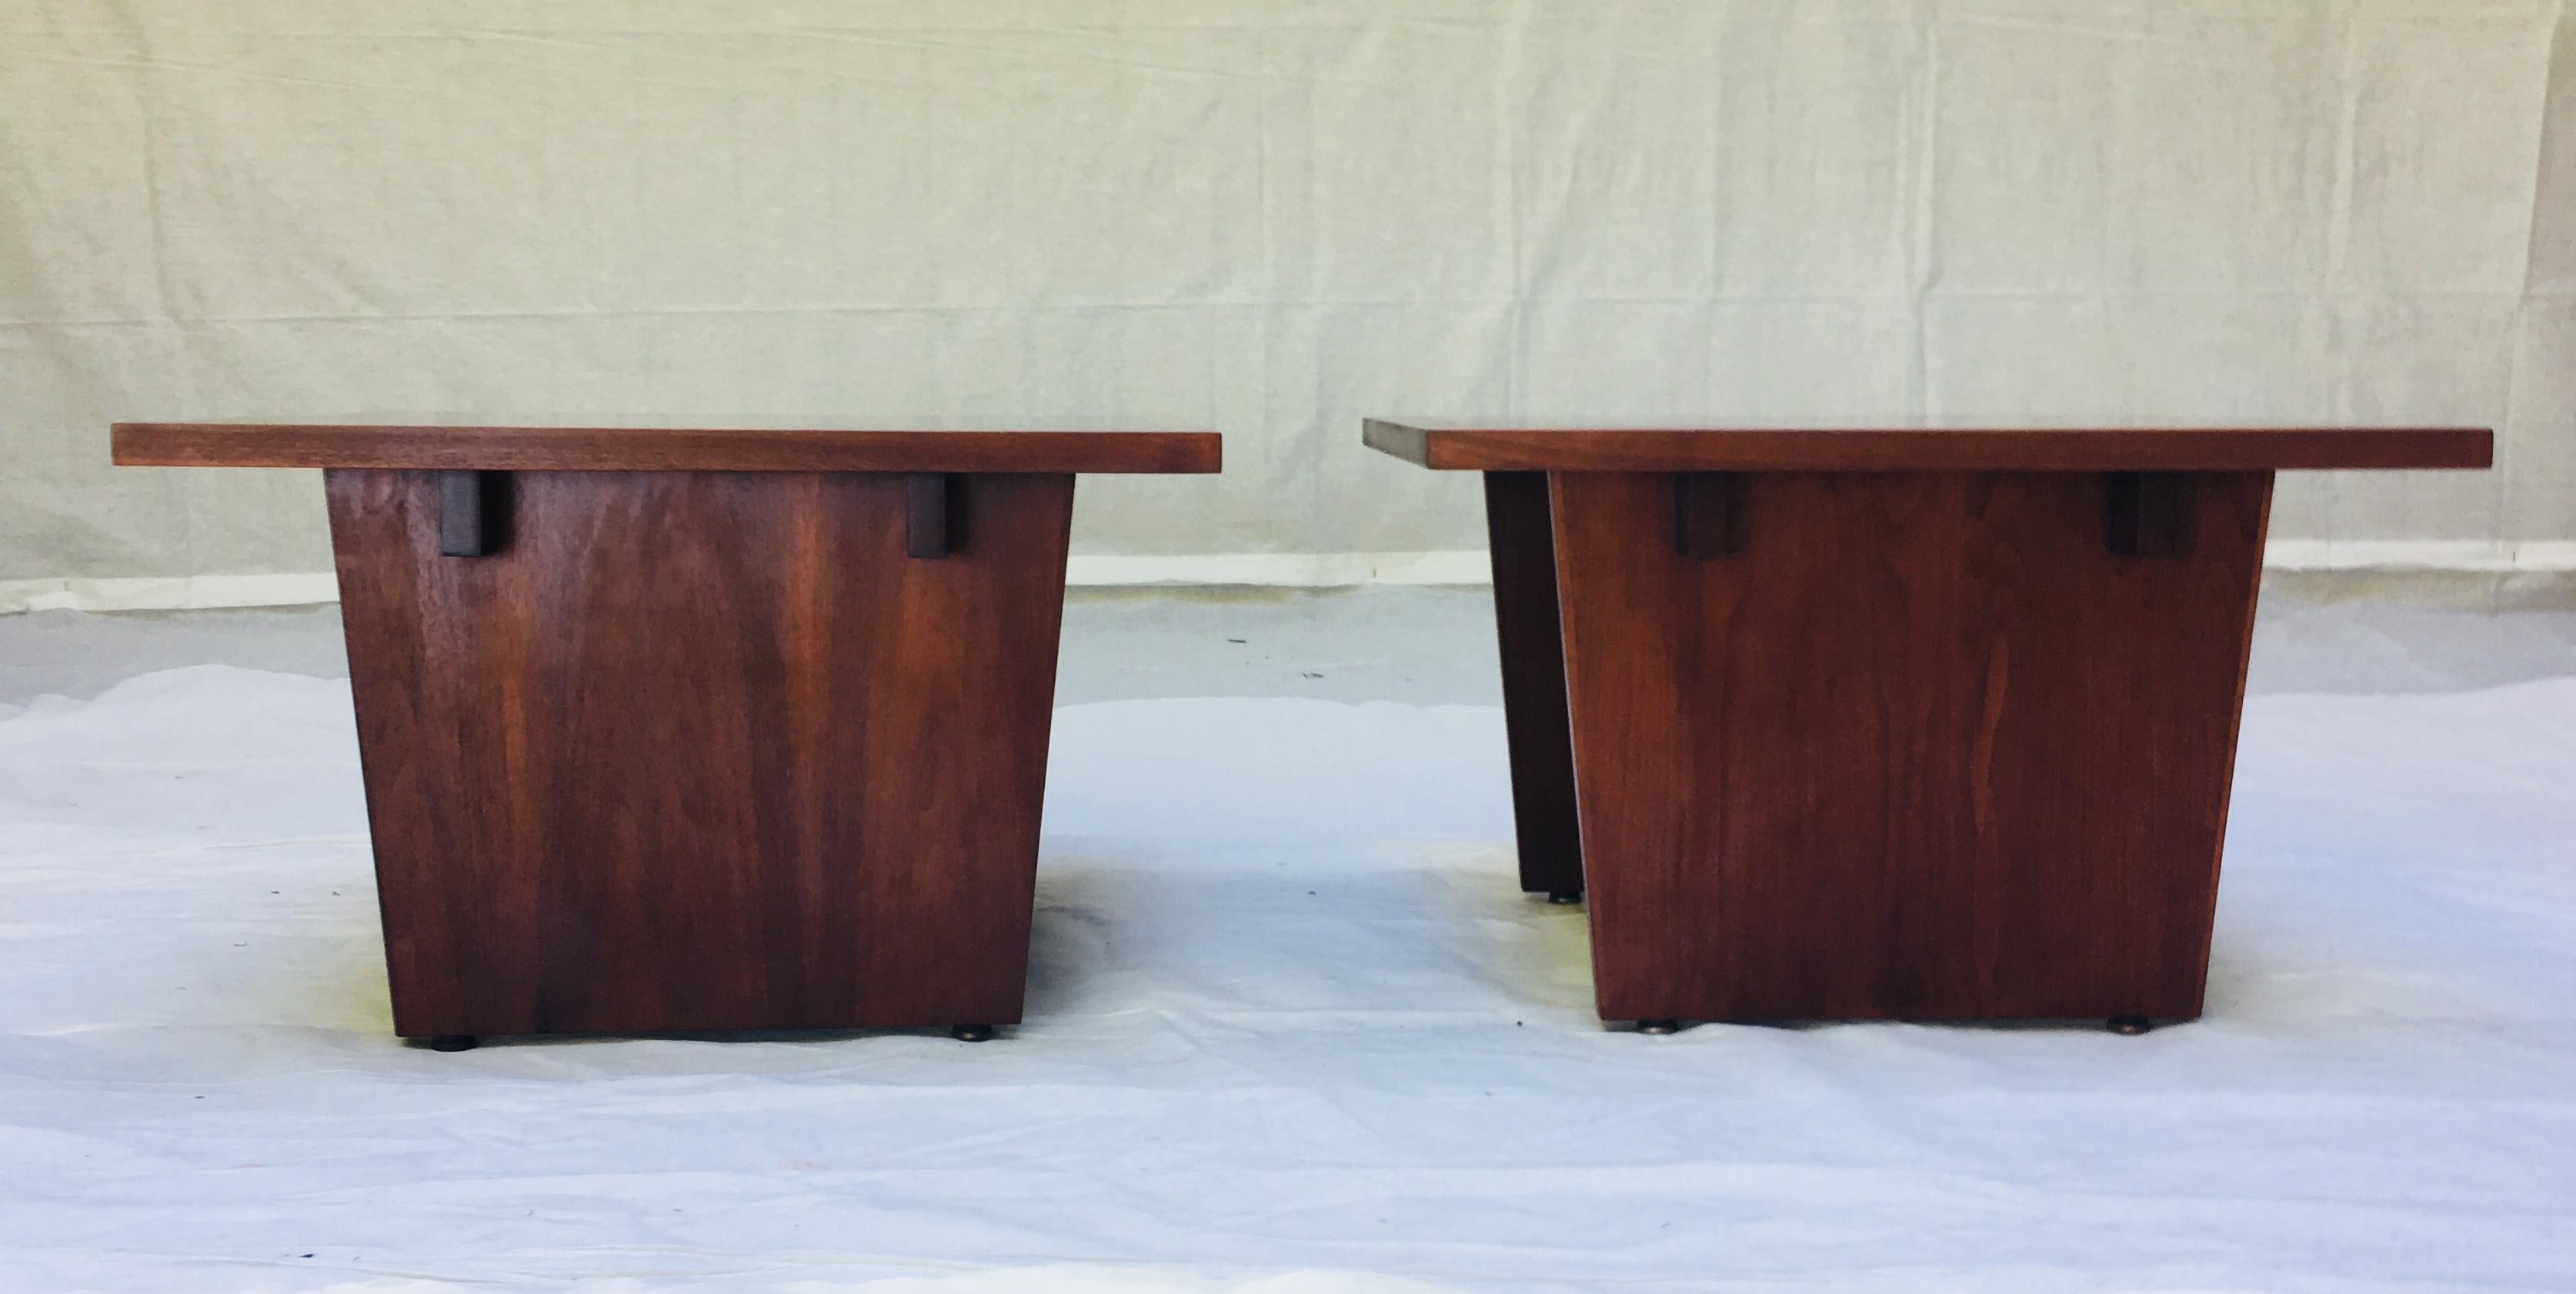 Ein Paar Beistelltische des modernen kalifornischen Möbelhandwerkers Frank Rohloff. 
Die Tischplatten bestehen aus schwarzem Harz, in das Stücke aus Walnussfurnier eingelassen sind, so dass ein dynamisches Nebeneinander der Materialien entsteht, das